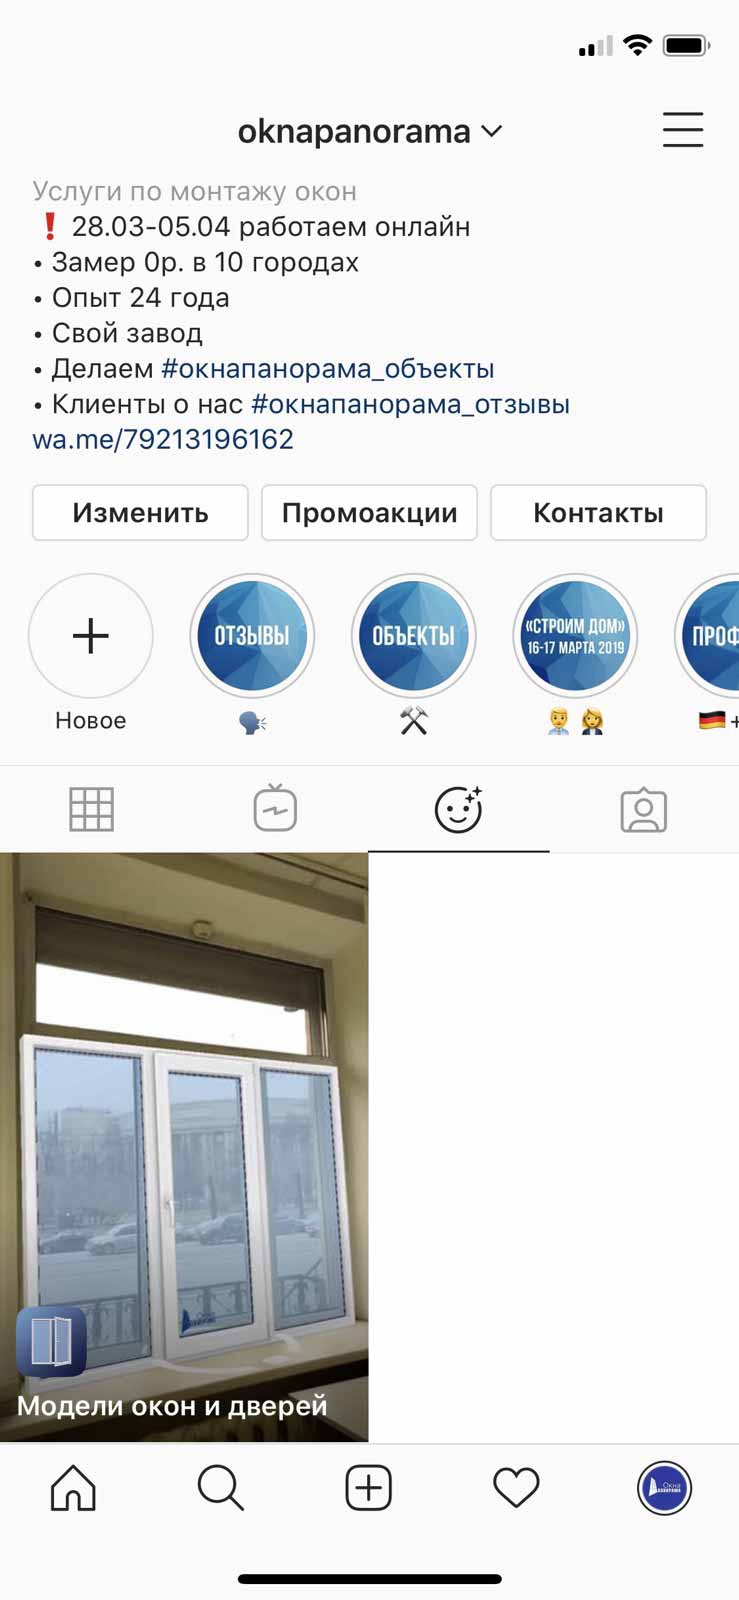 Окна Панорама инстаграм